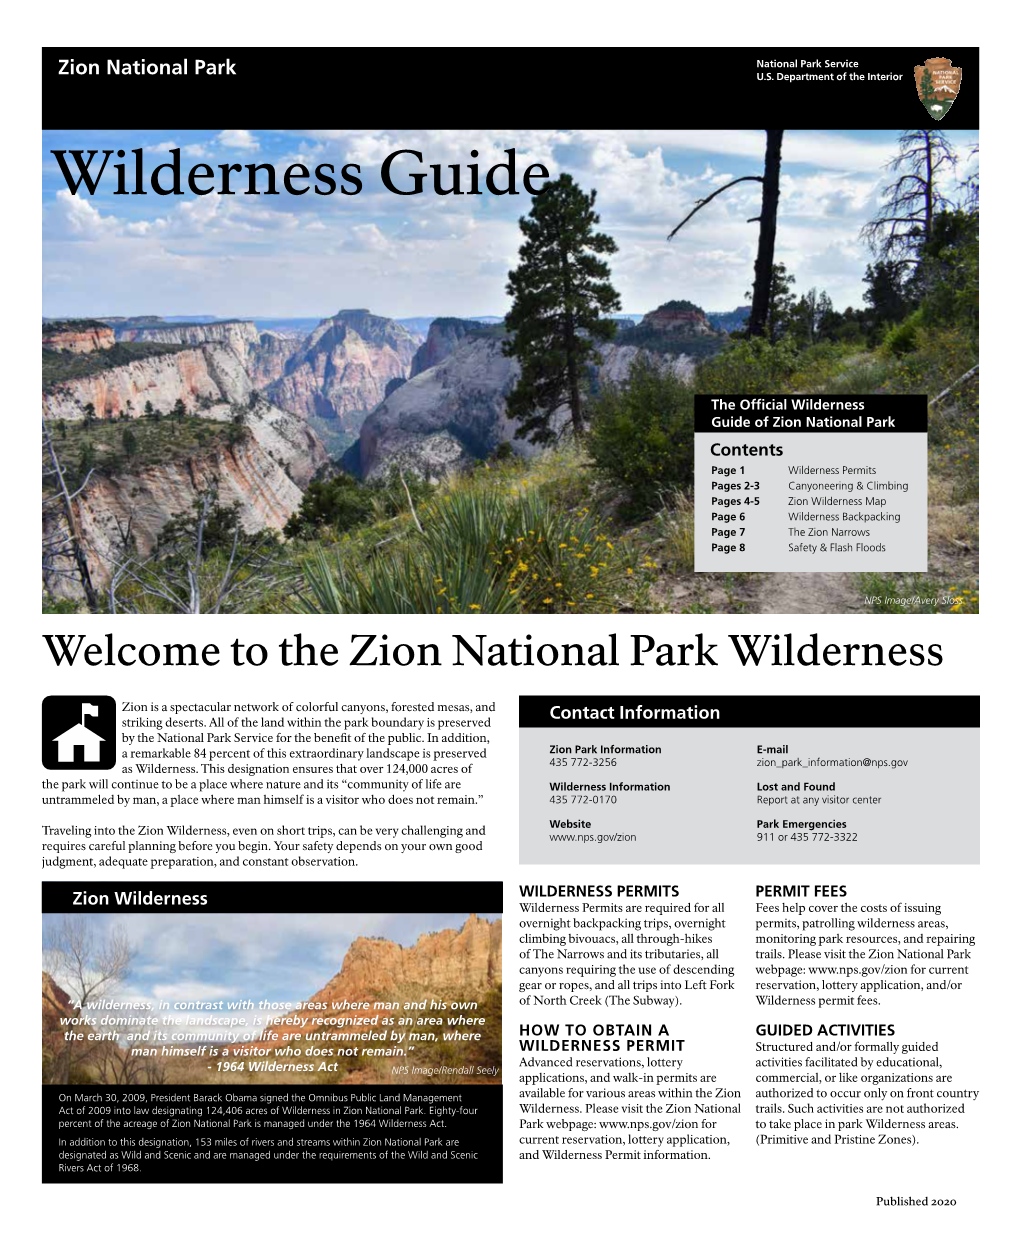 Zion Wilderness Guide